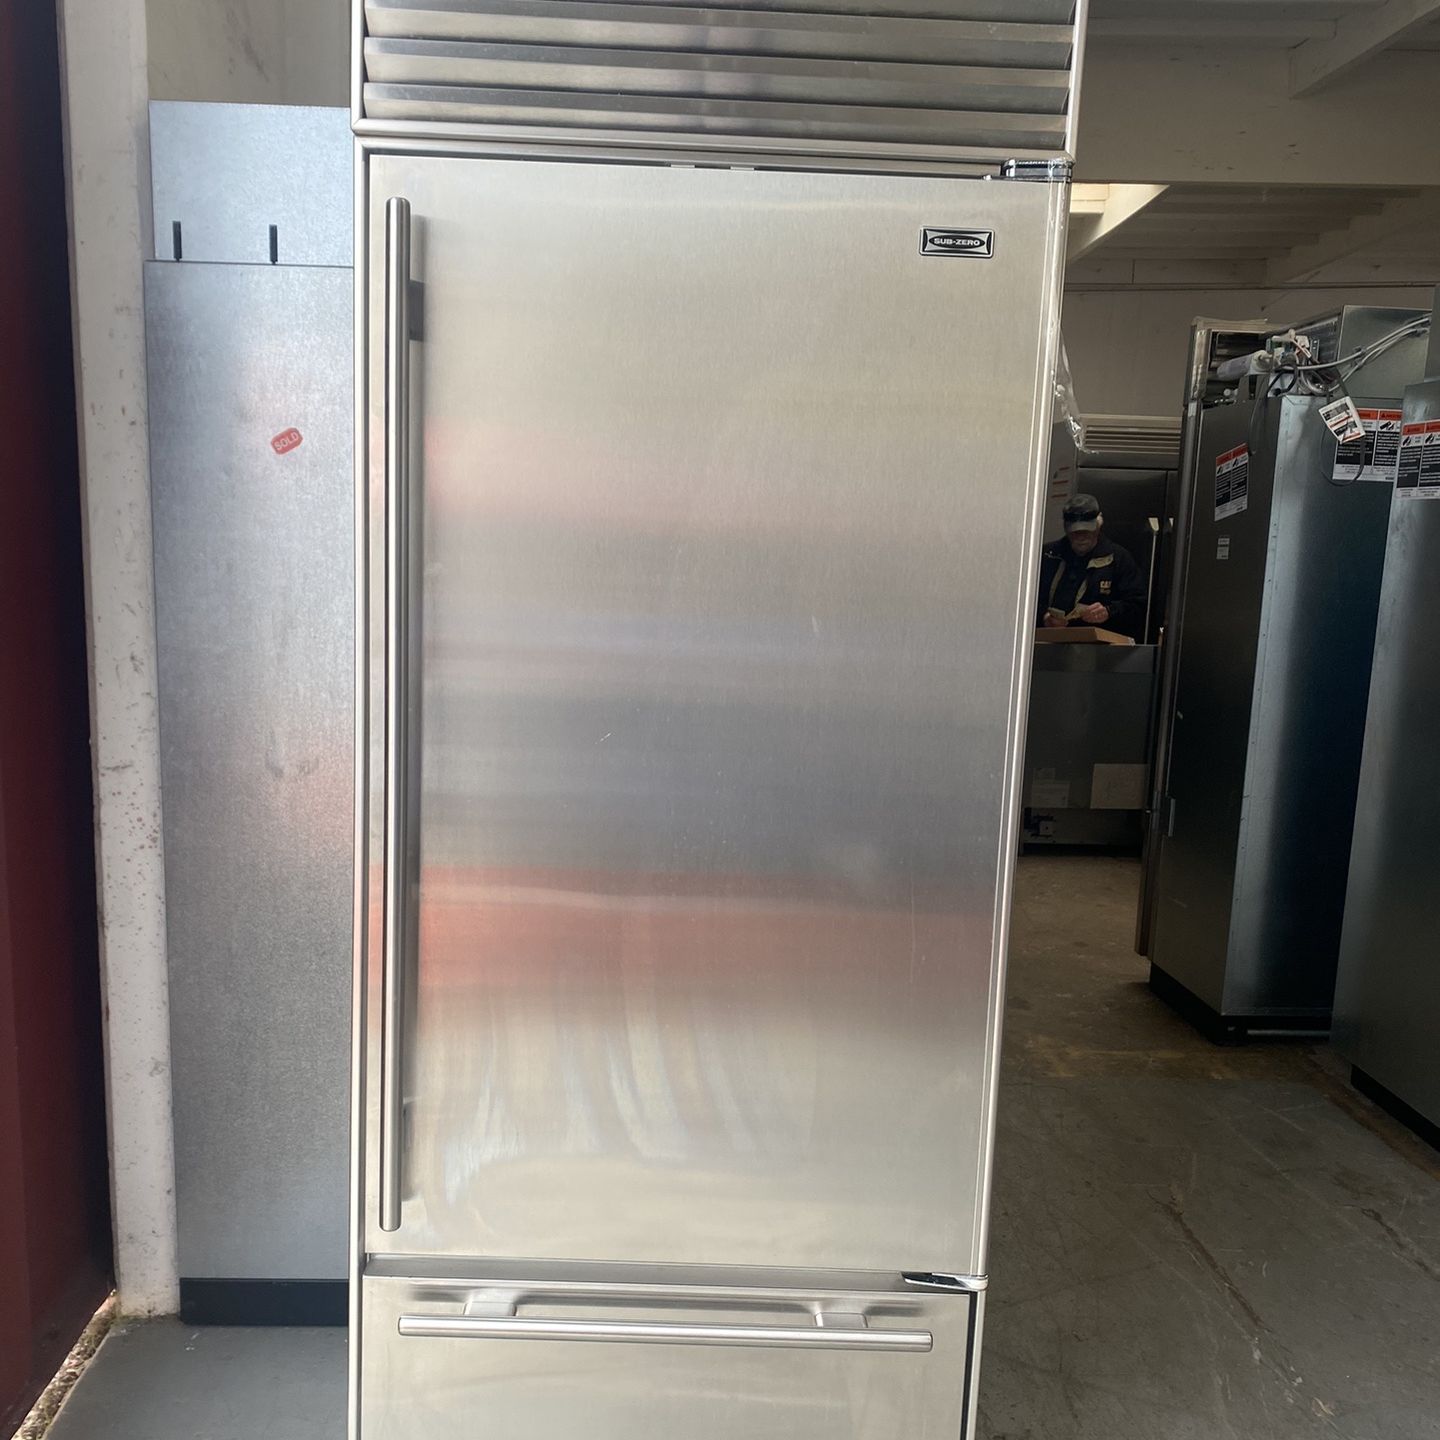 30” Sub-Zero Built In Refrigerator 